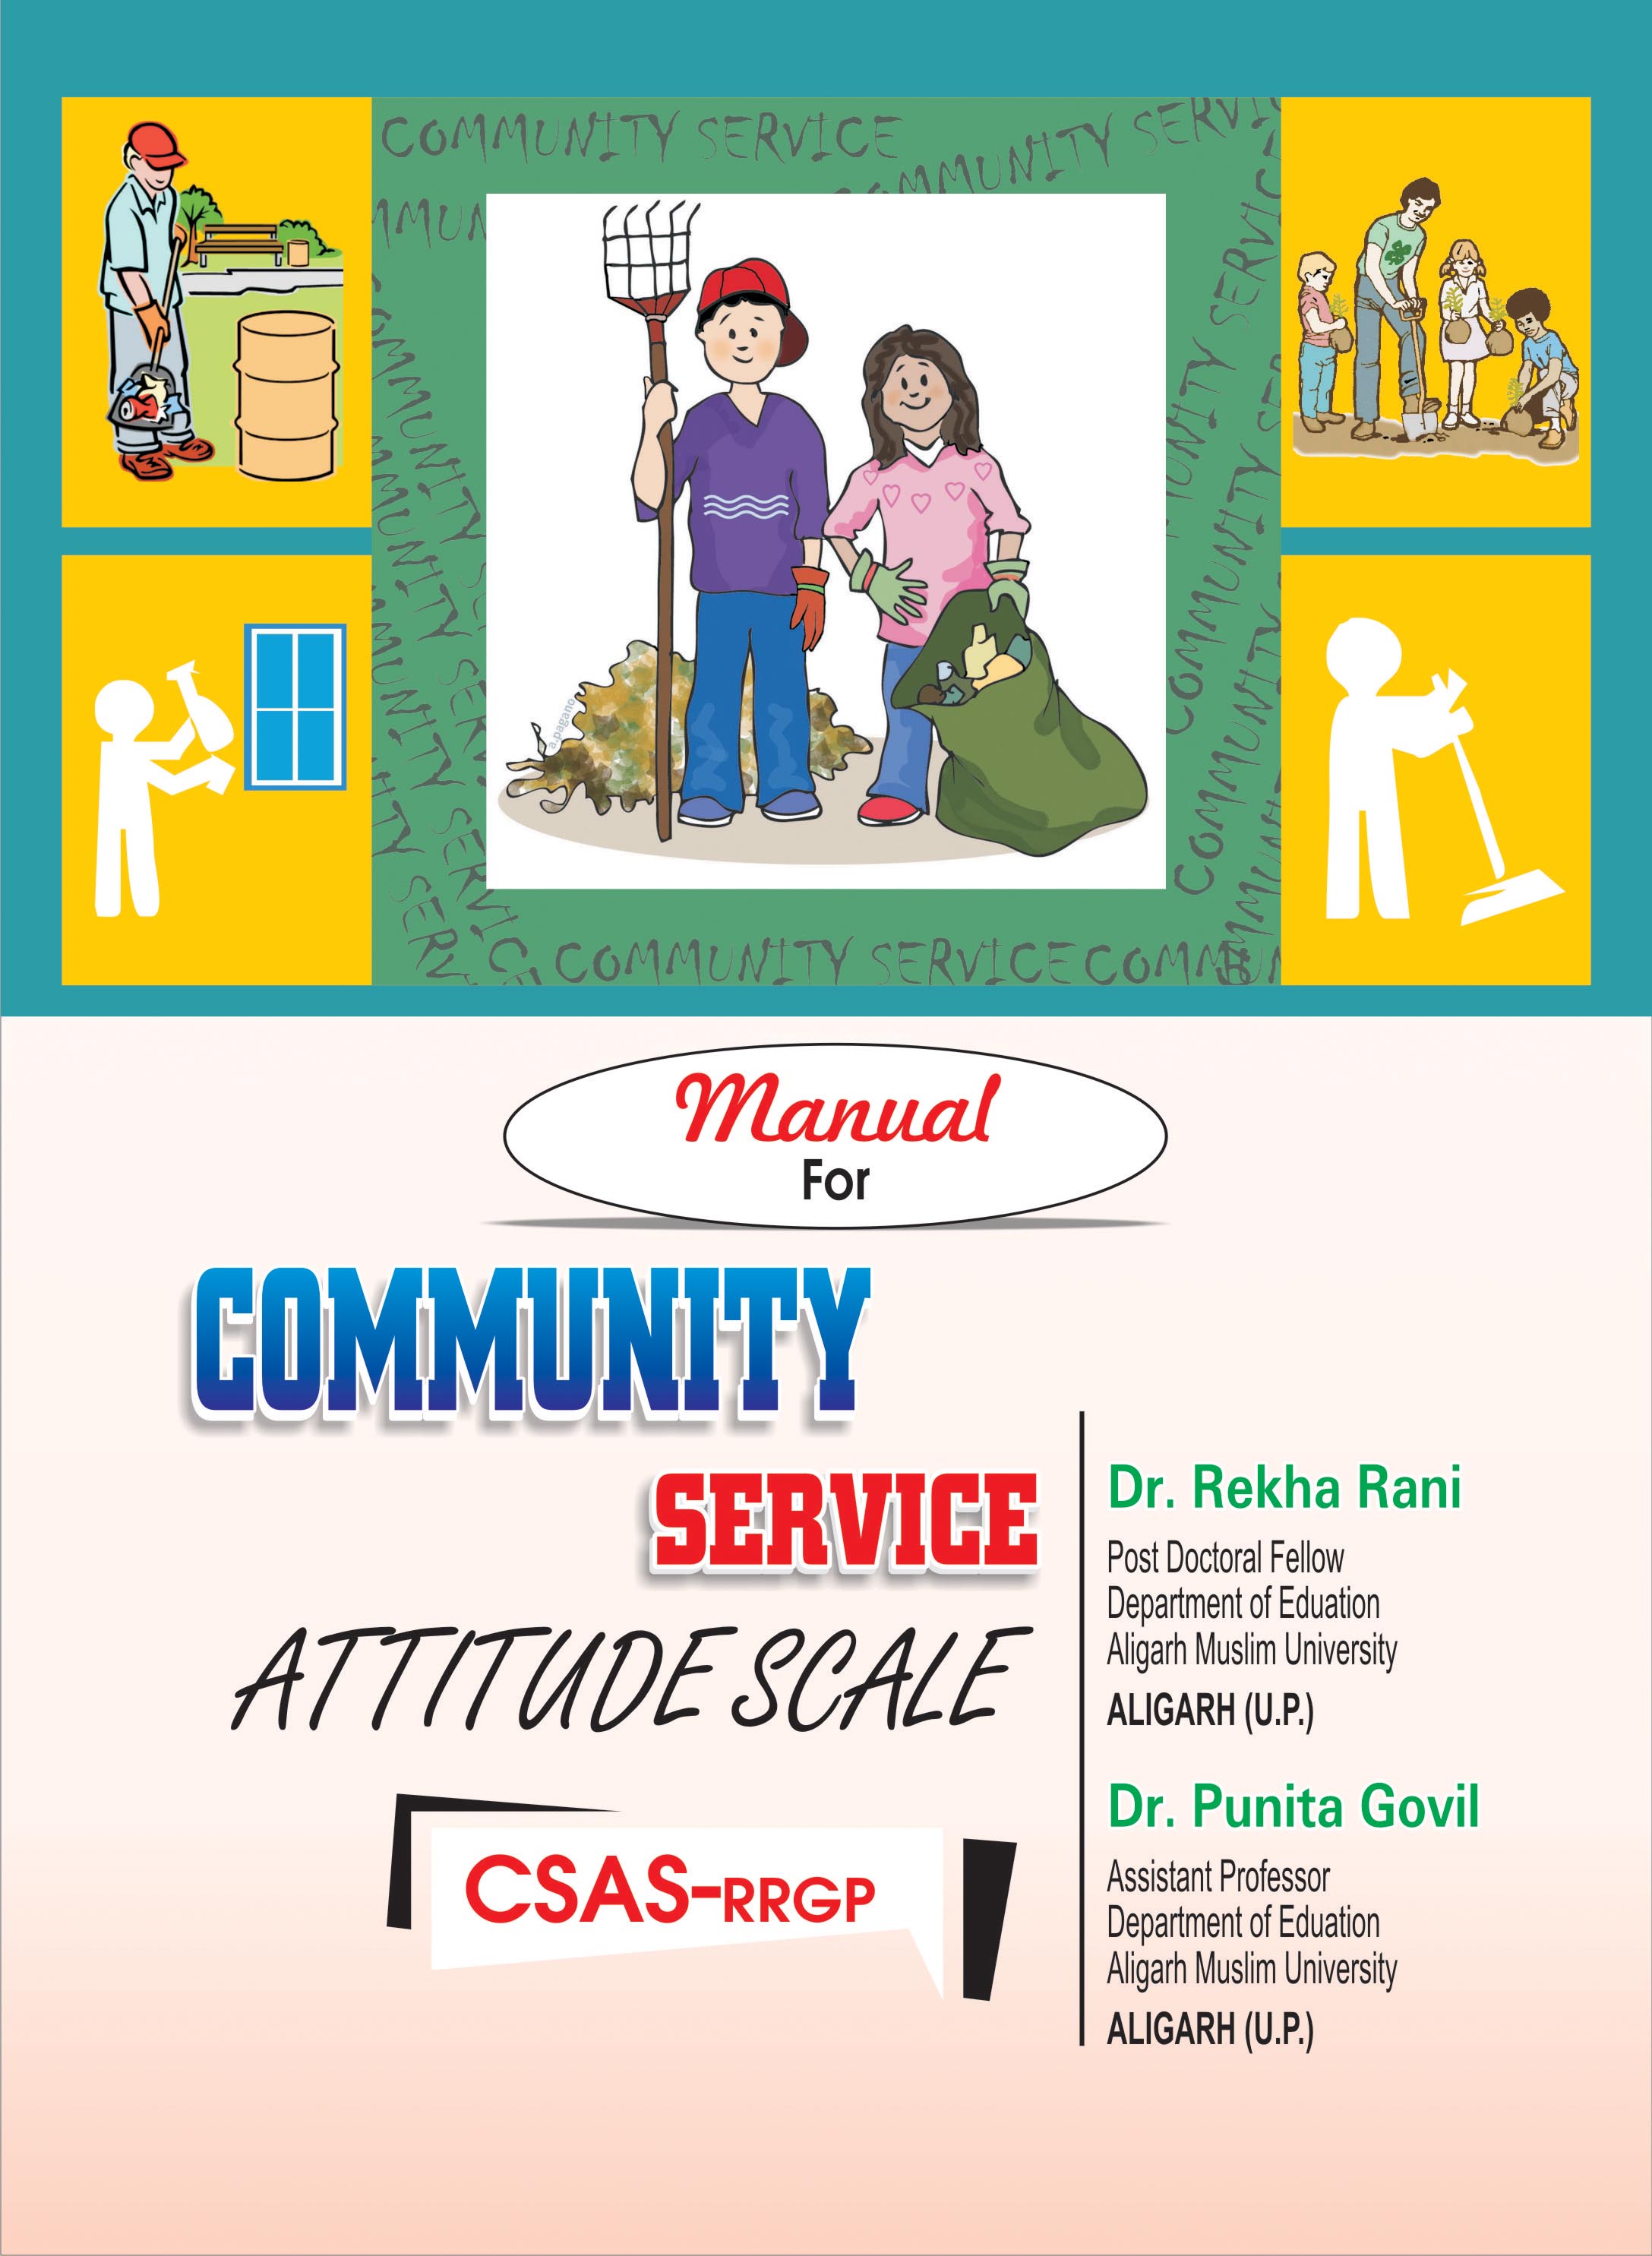 COMMUNITY-SERVICE-ATTITUDE-SCALE